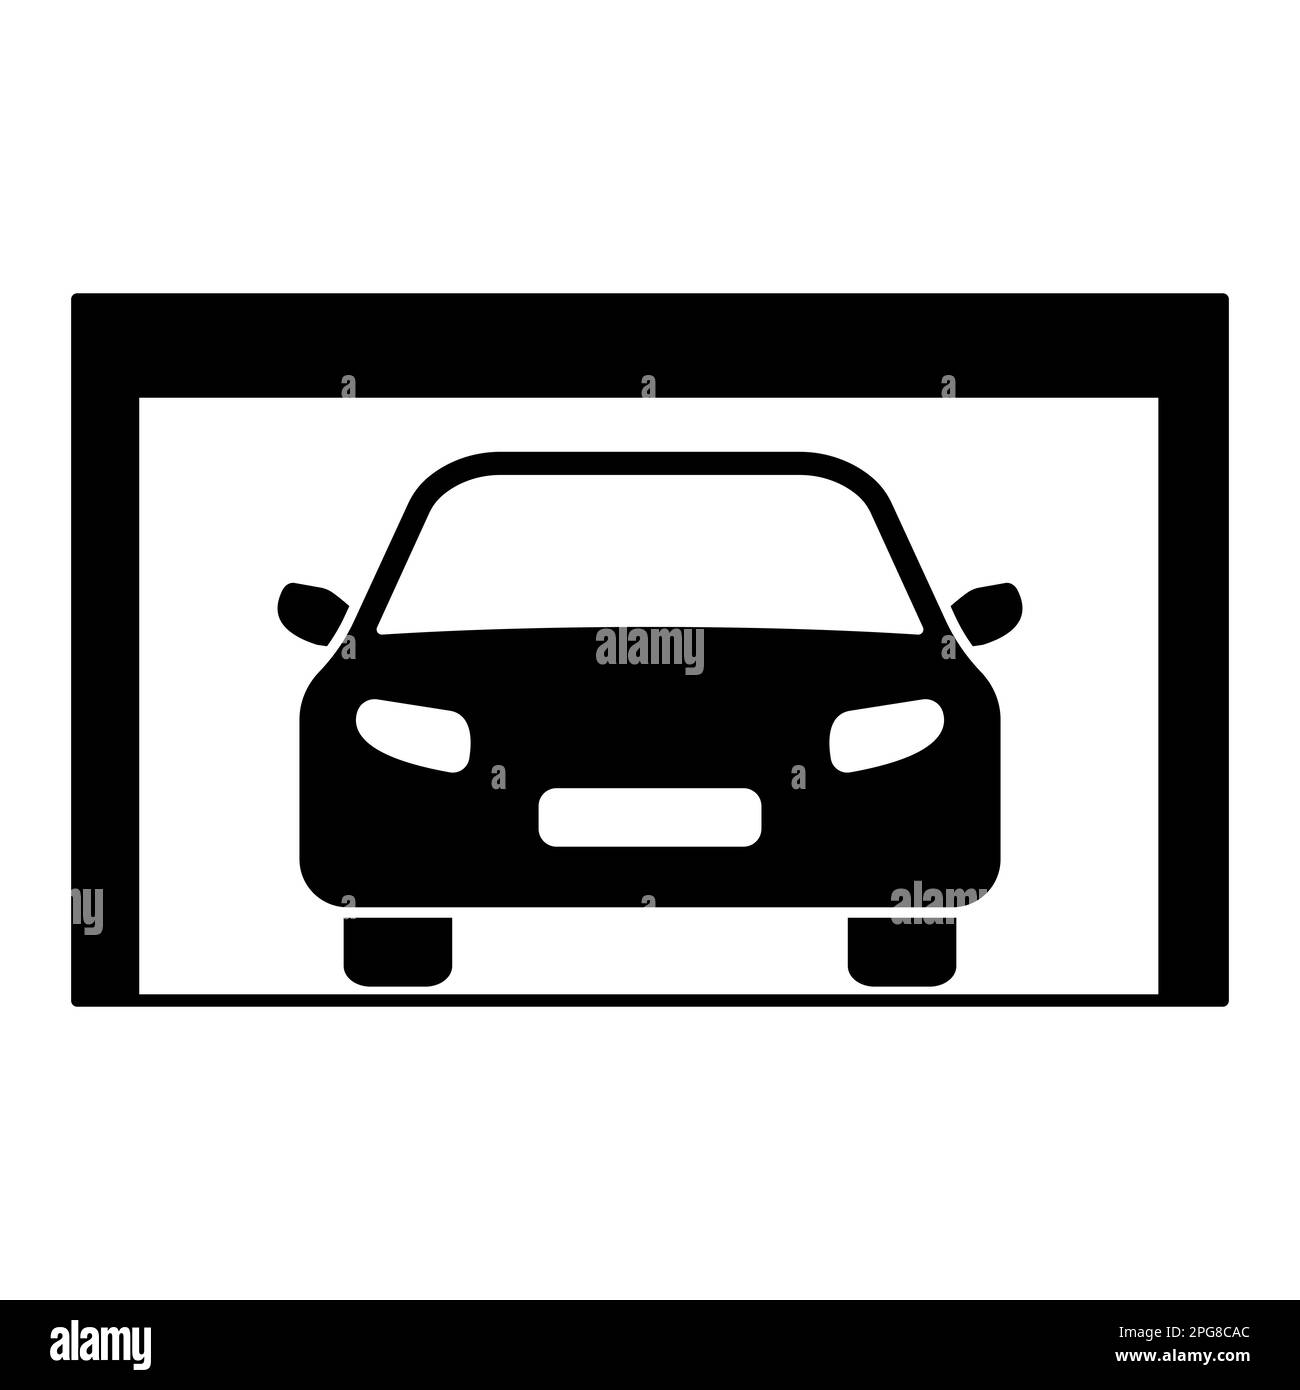 Auto-Tür-Muster stockbild. Bild von verriegelung, zeile - 270059